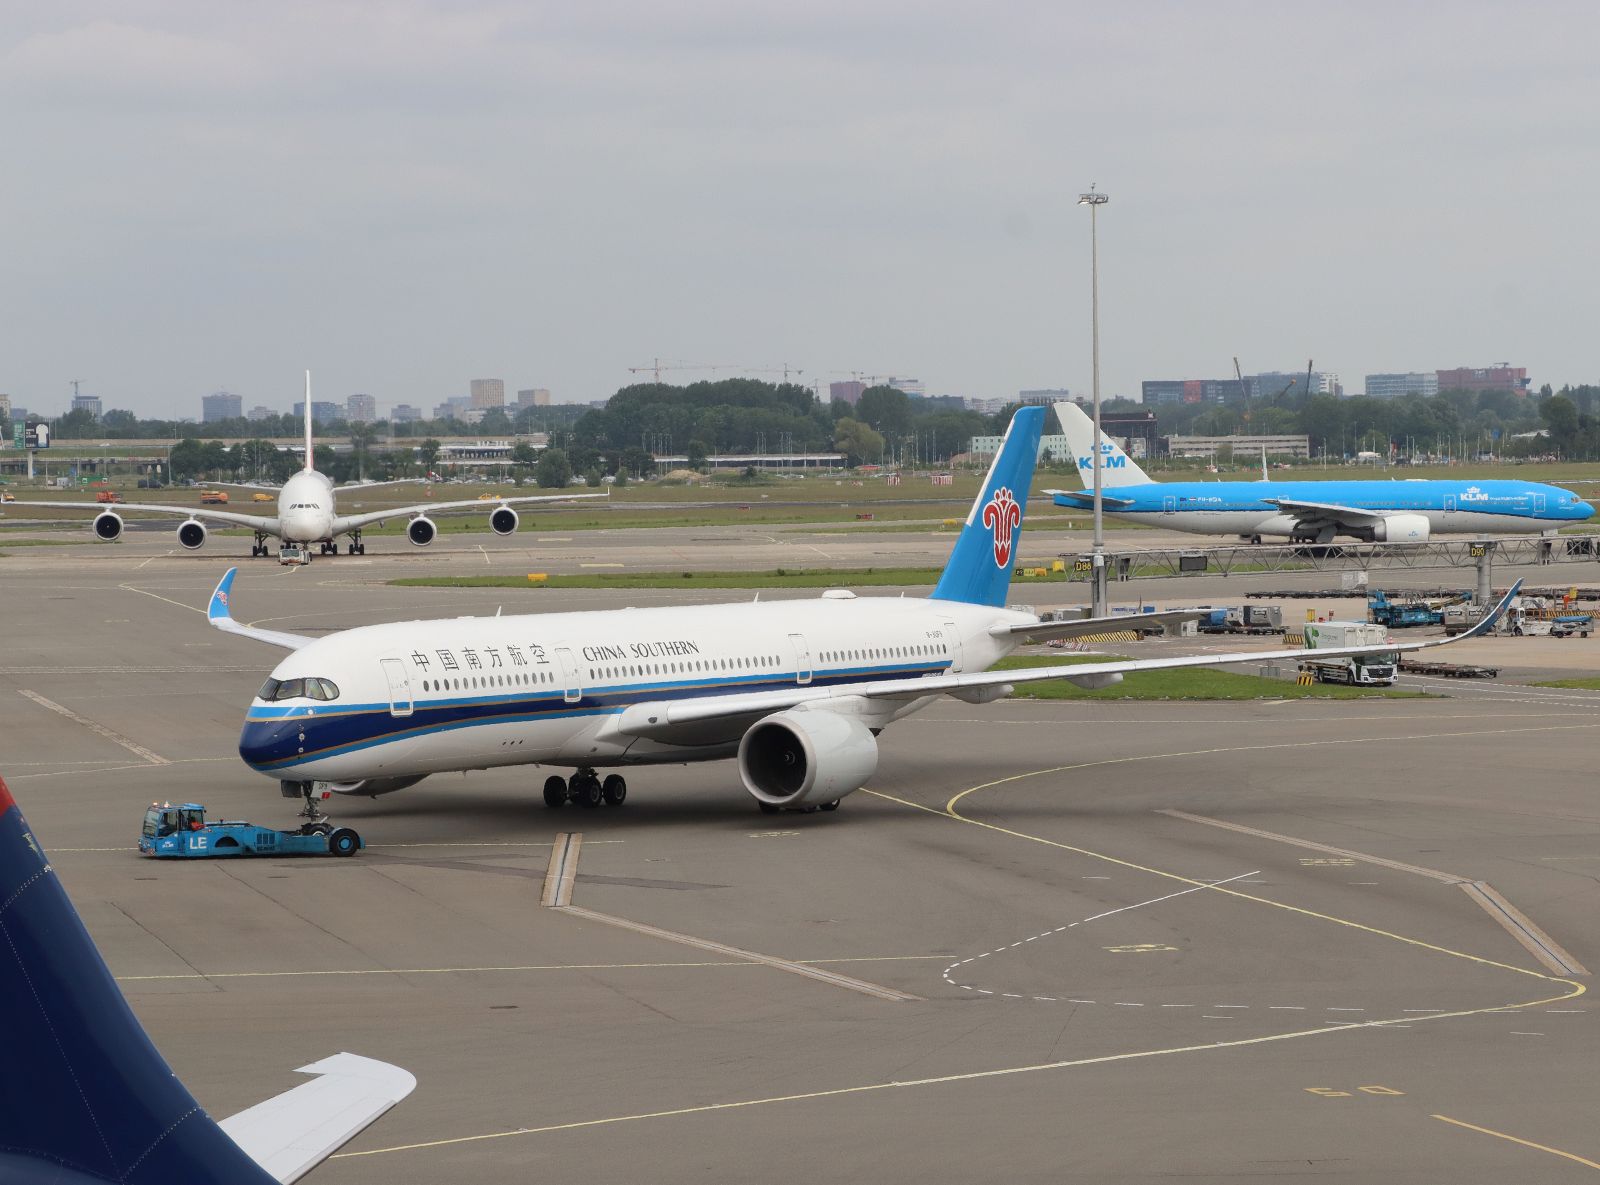 China Southern Airlines B-30F9 Airbus A350-941 Erstflug dieses Flugzeugs war am 29-03-2021. Flughafen Amsterdam Schiphol, Niederlande 03-06-2024.

China Southern Airlines B-30F9 Airbus A350-941 eerste vlucht van dit vliegtuig was op 29-03-2021. Luchthaven Schiphol 03-06-2024.

